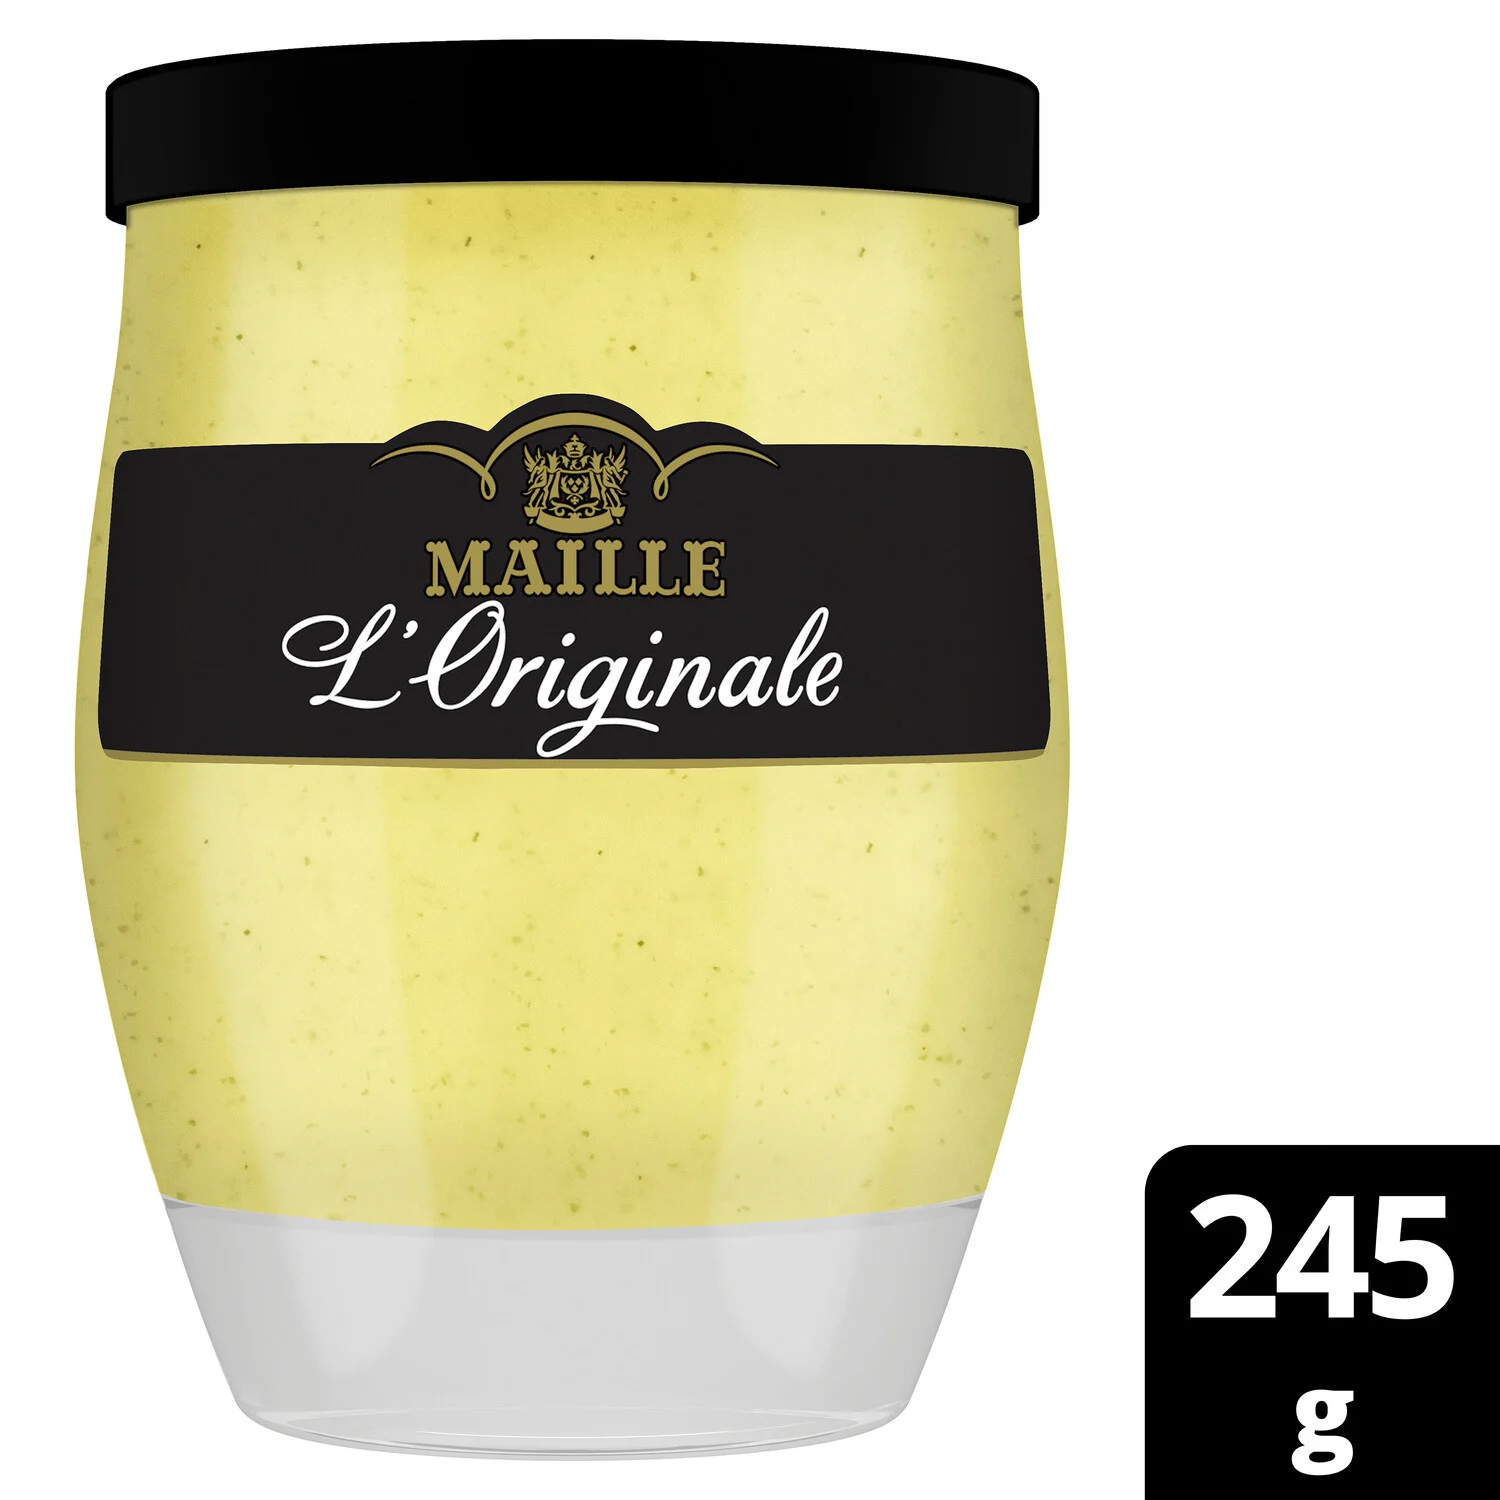 Maille Mustard originale glass 245g